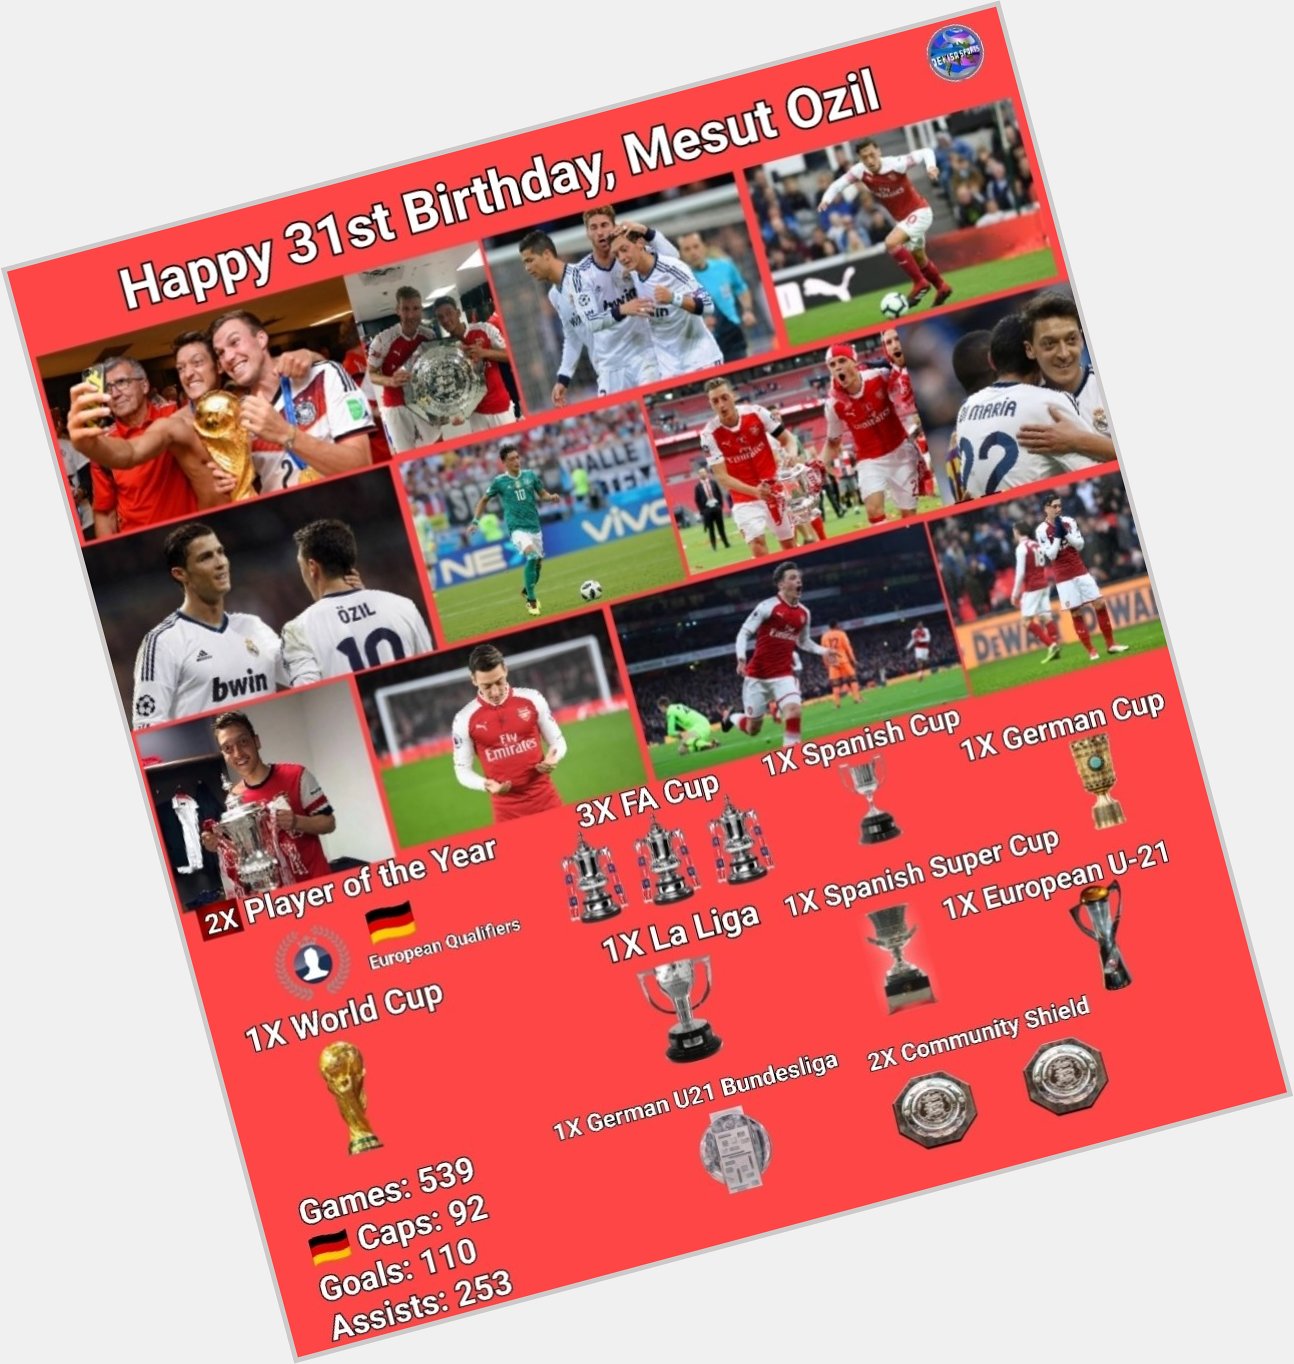 Happy 31st Birthday, Mesut Ozil 